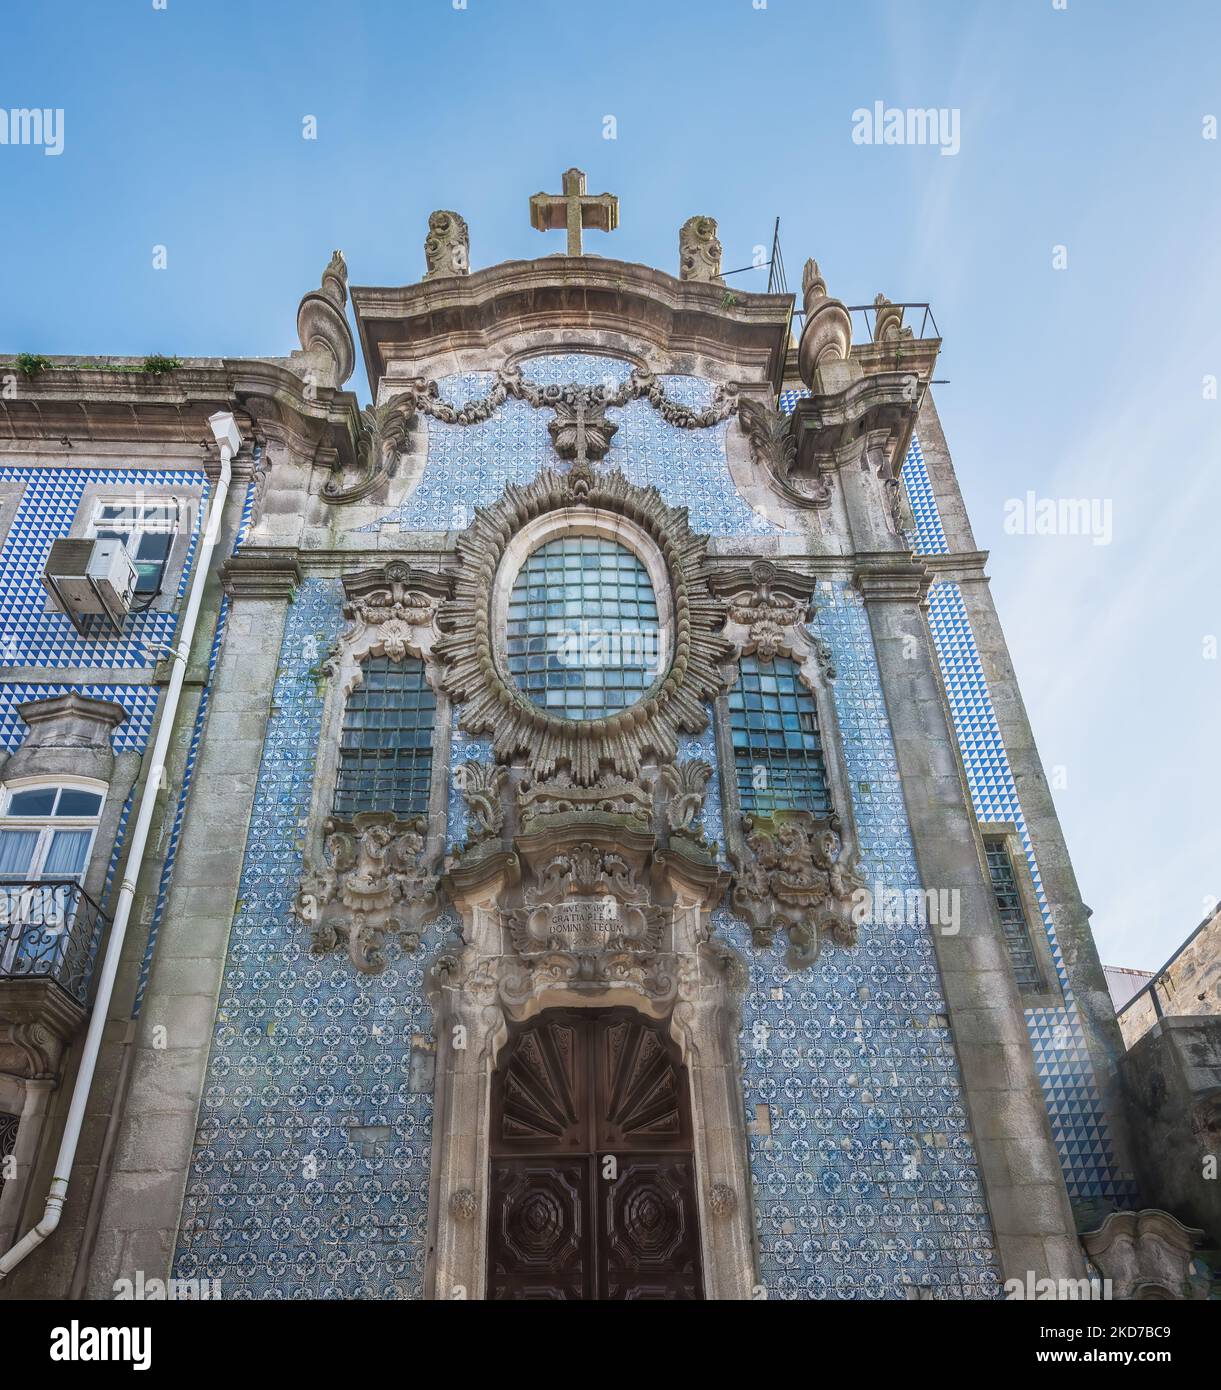 Église du troisième ordre (Igreja do Terco) - Porto, Portugal Banque D'Images